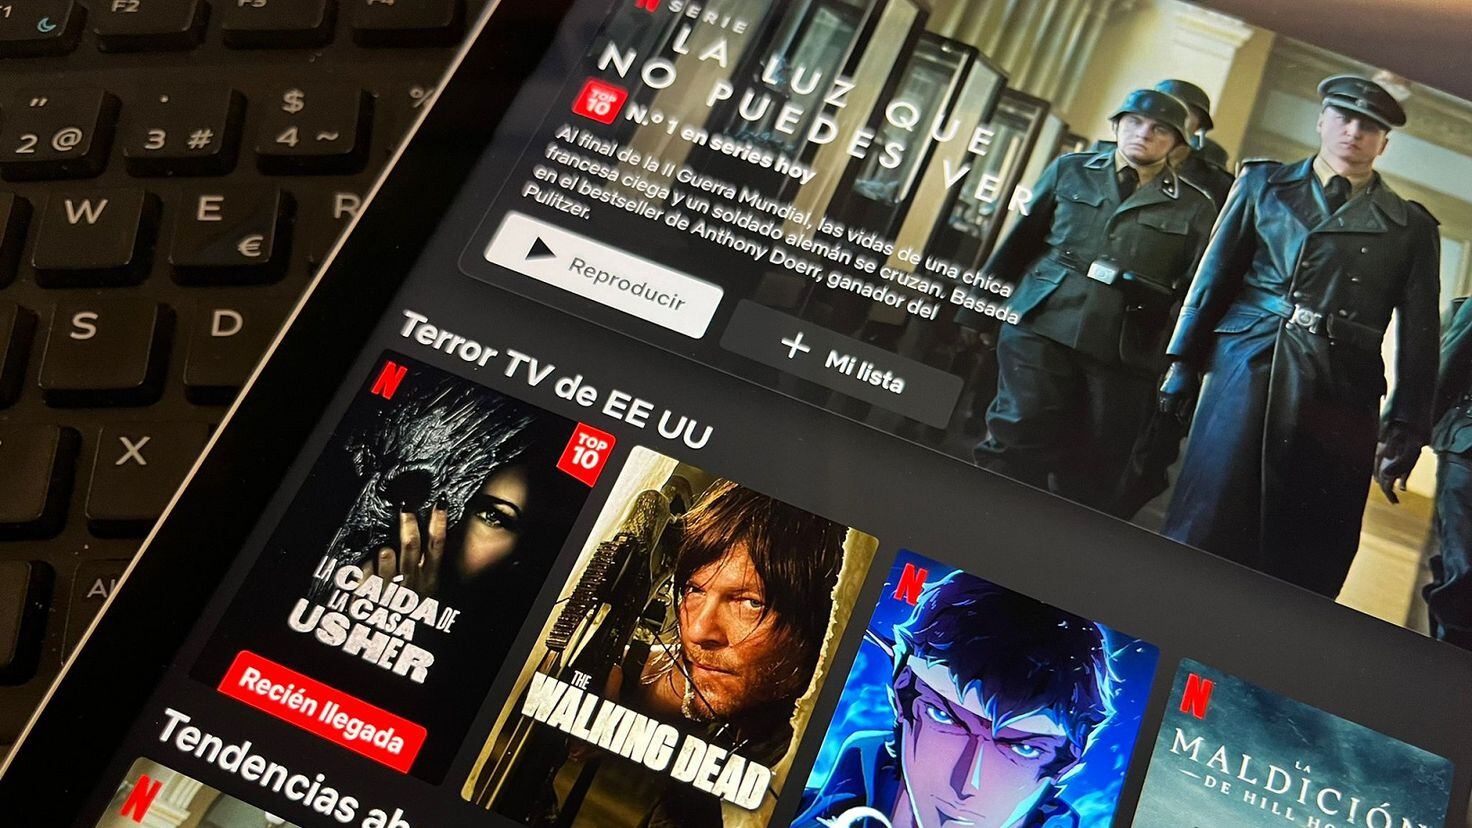 Netflix aumentará sus precios de suscripción en noviembre - Digital Trends  Español